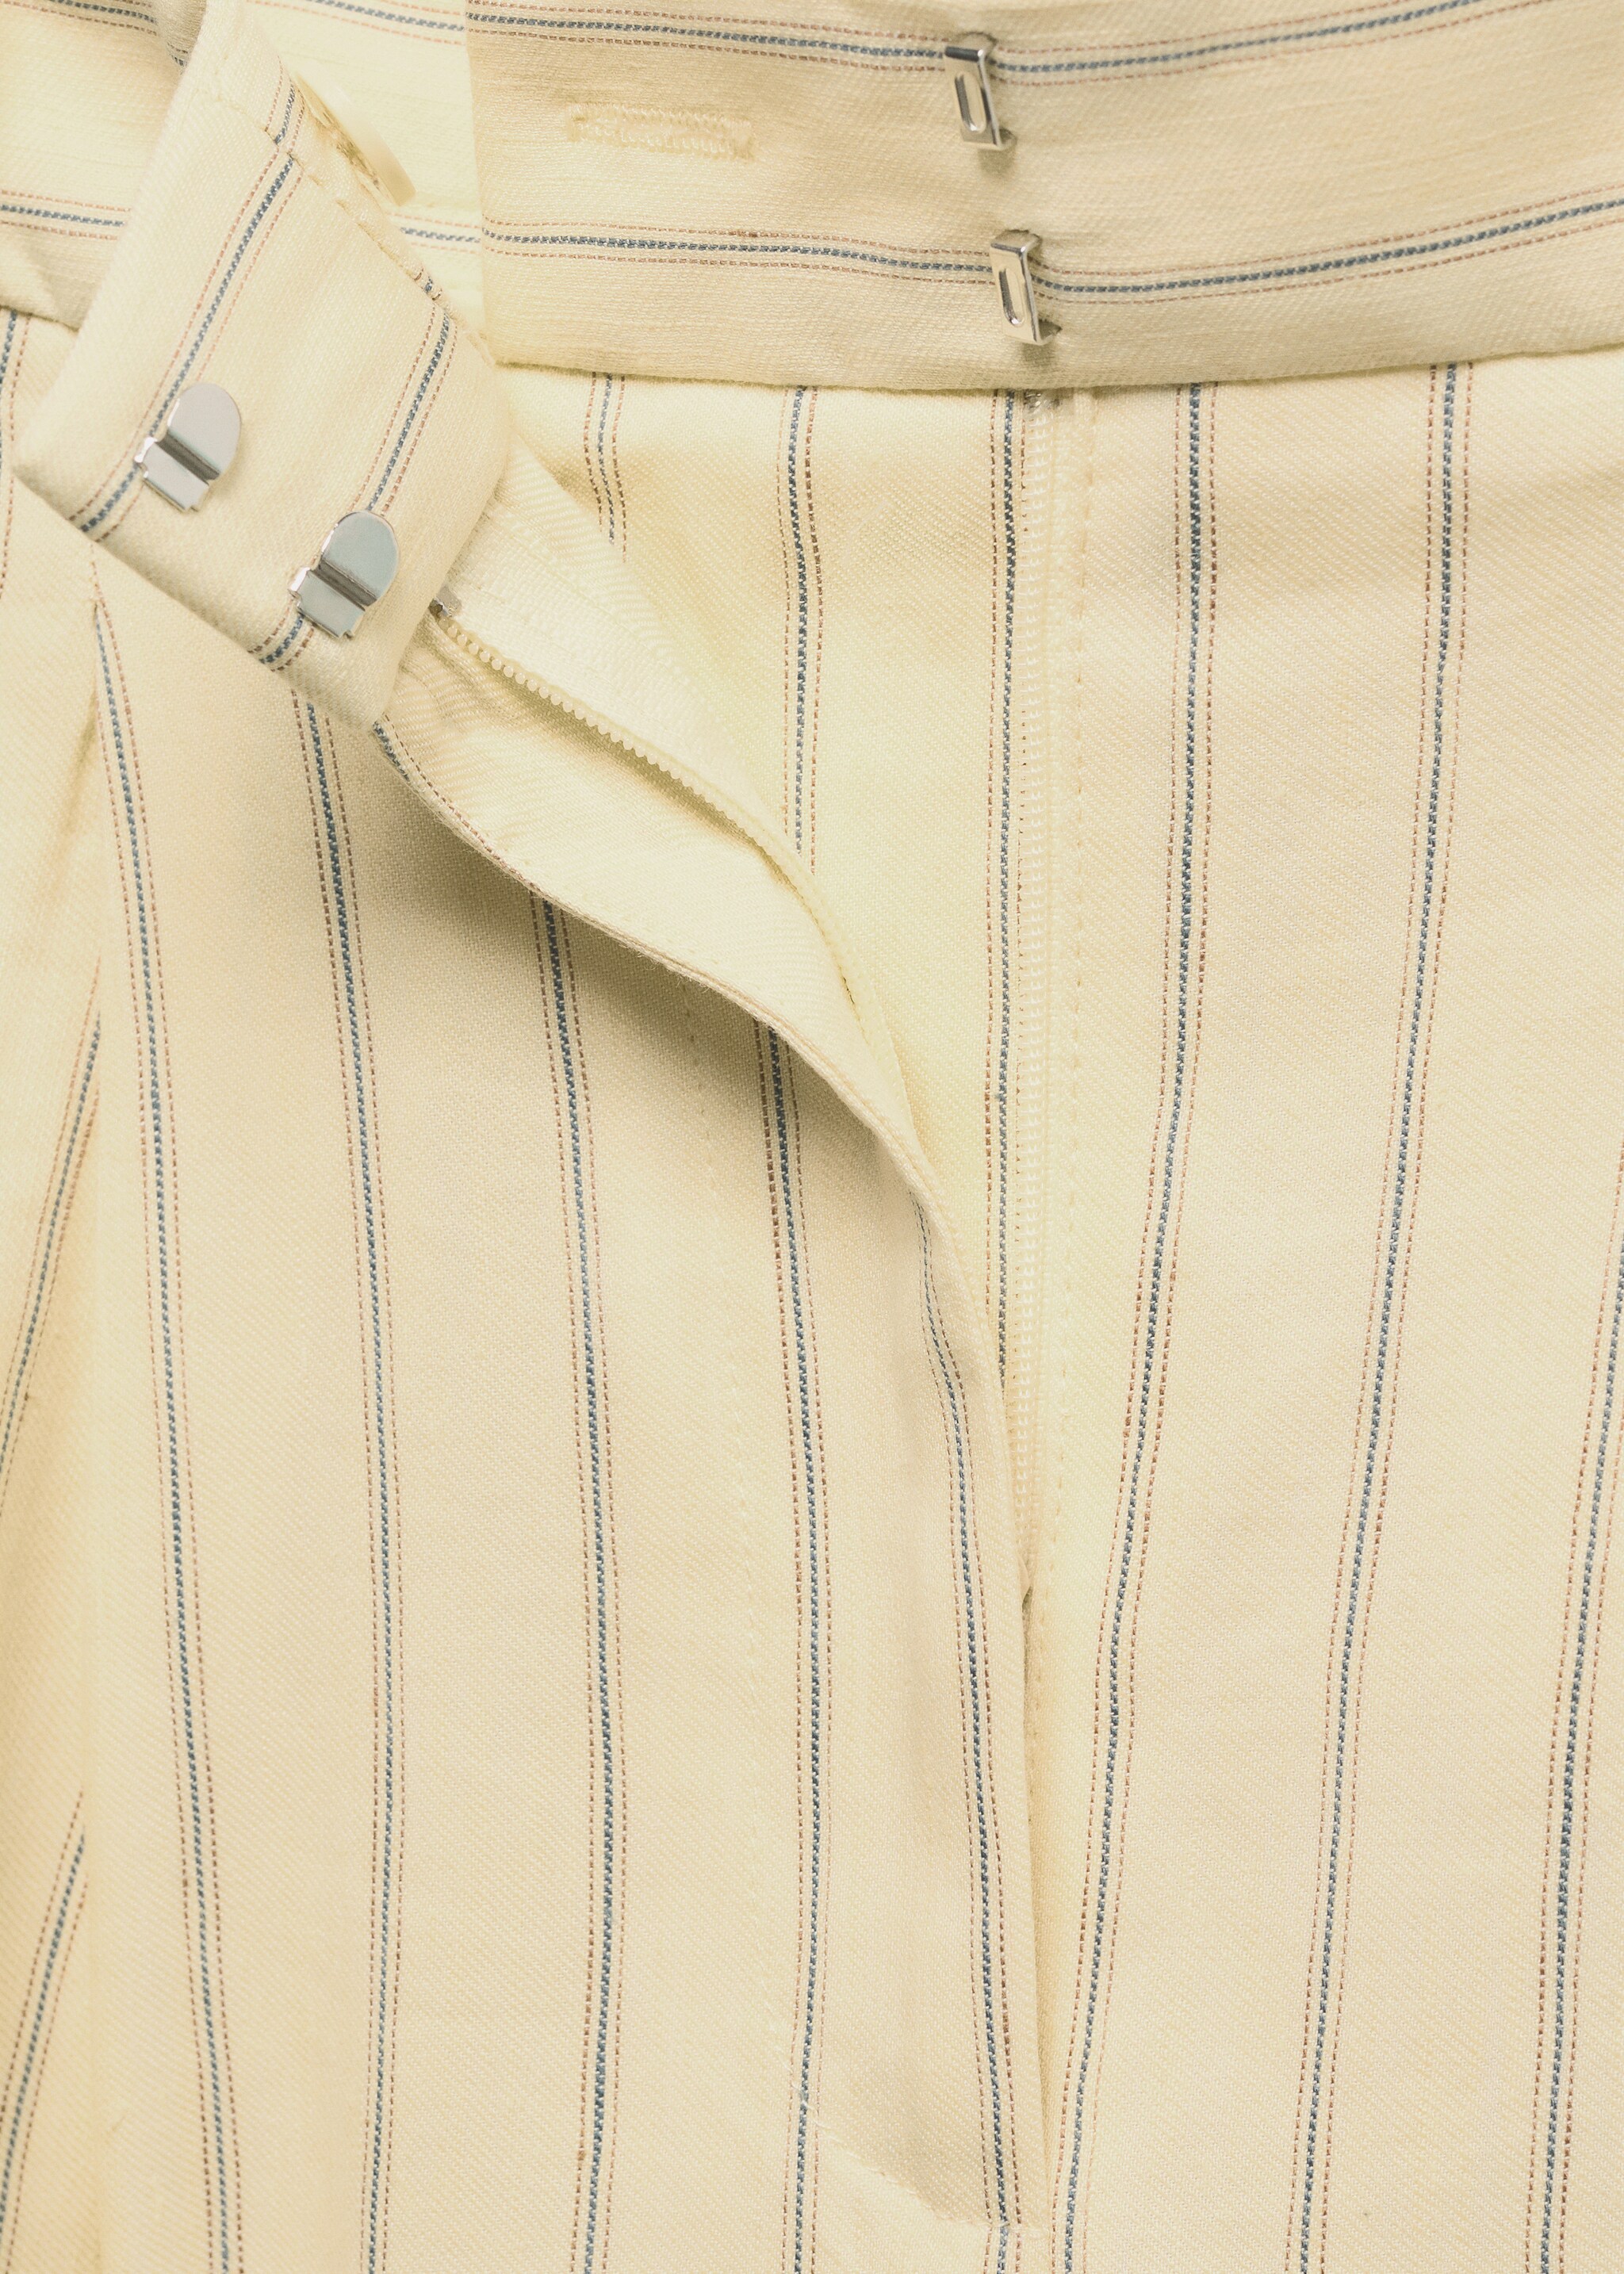 Pantalón lino rayas - Detalle del artículo 8